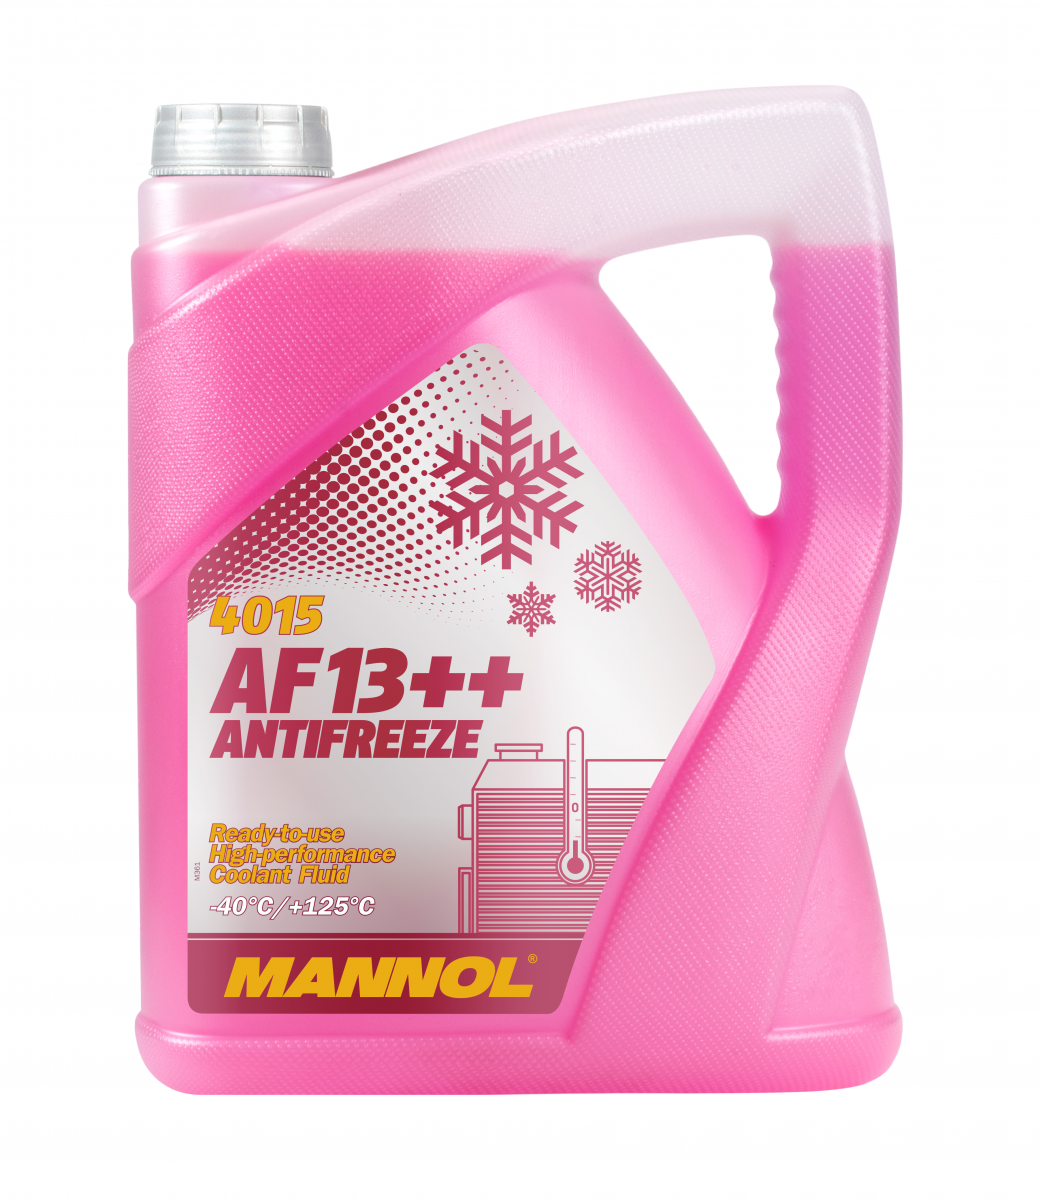 Mannol 4015 Kühlerfrostschutz Antifreeze AF13++ High Performance -40 Fertigmischung 5 Liter